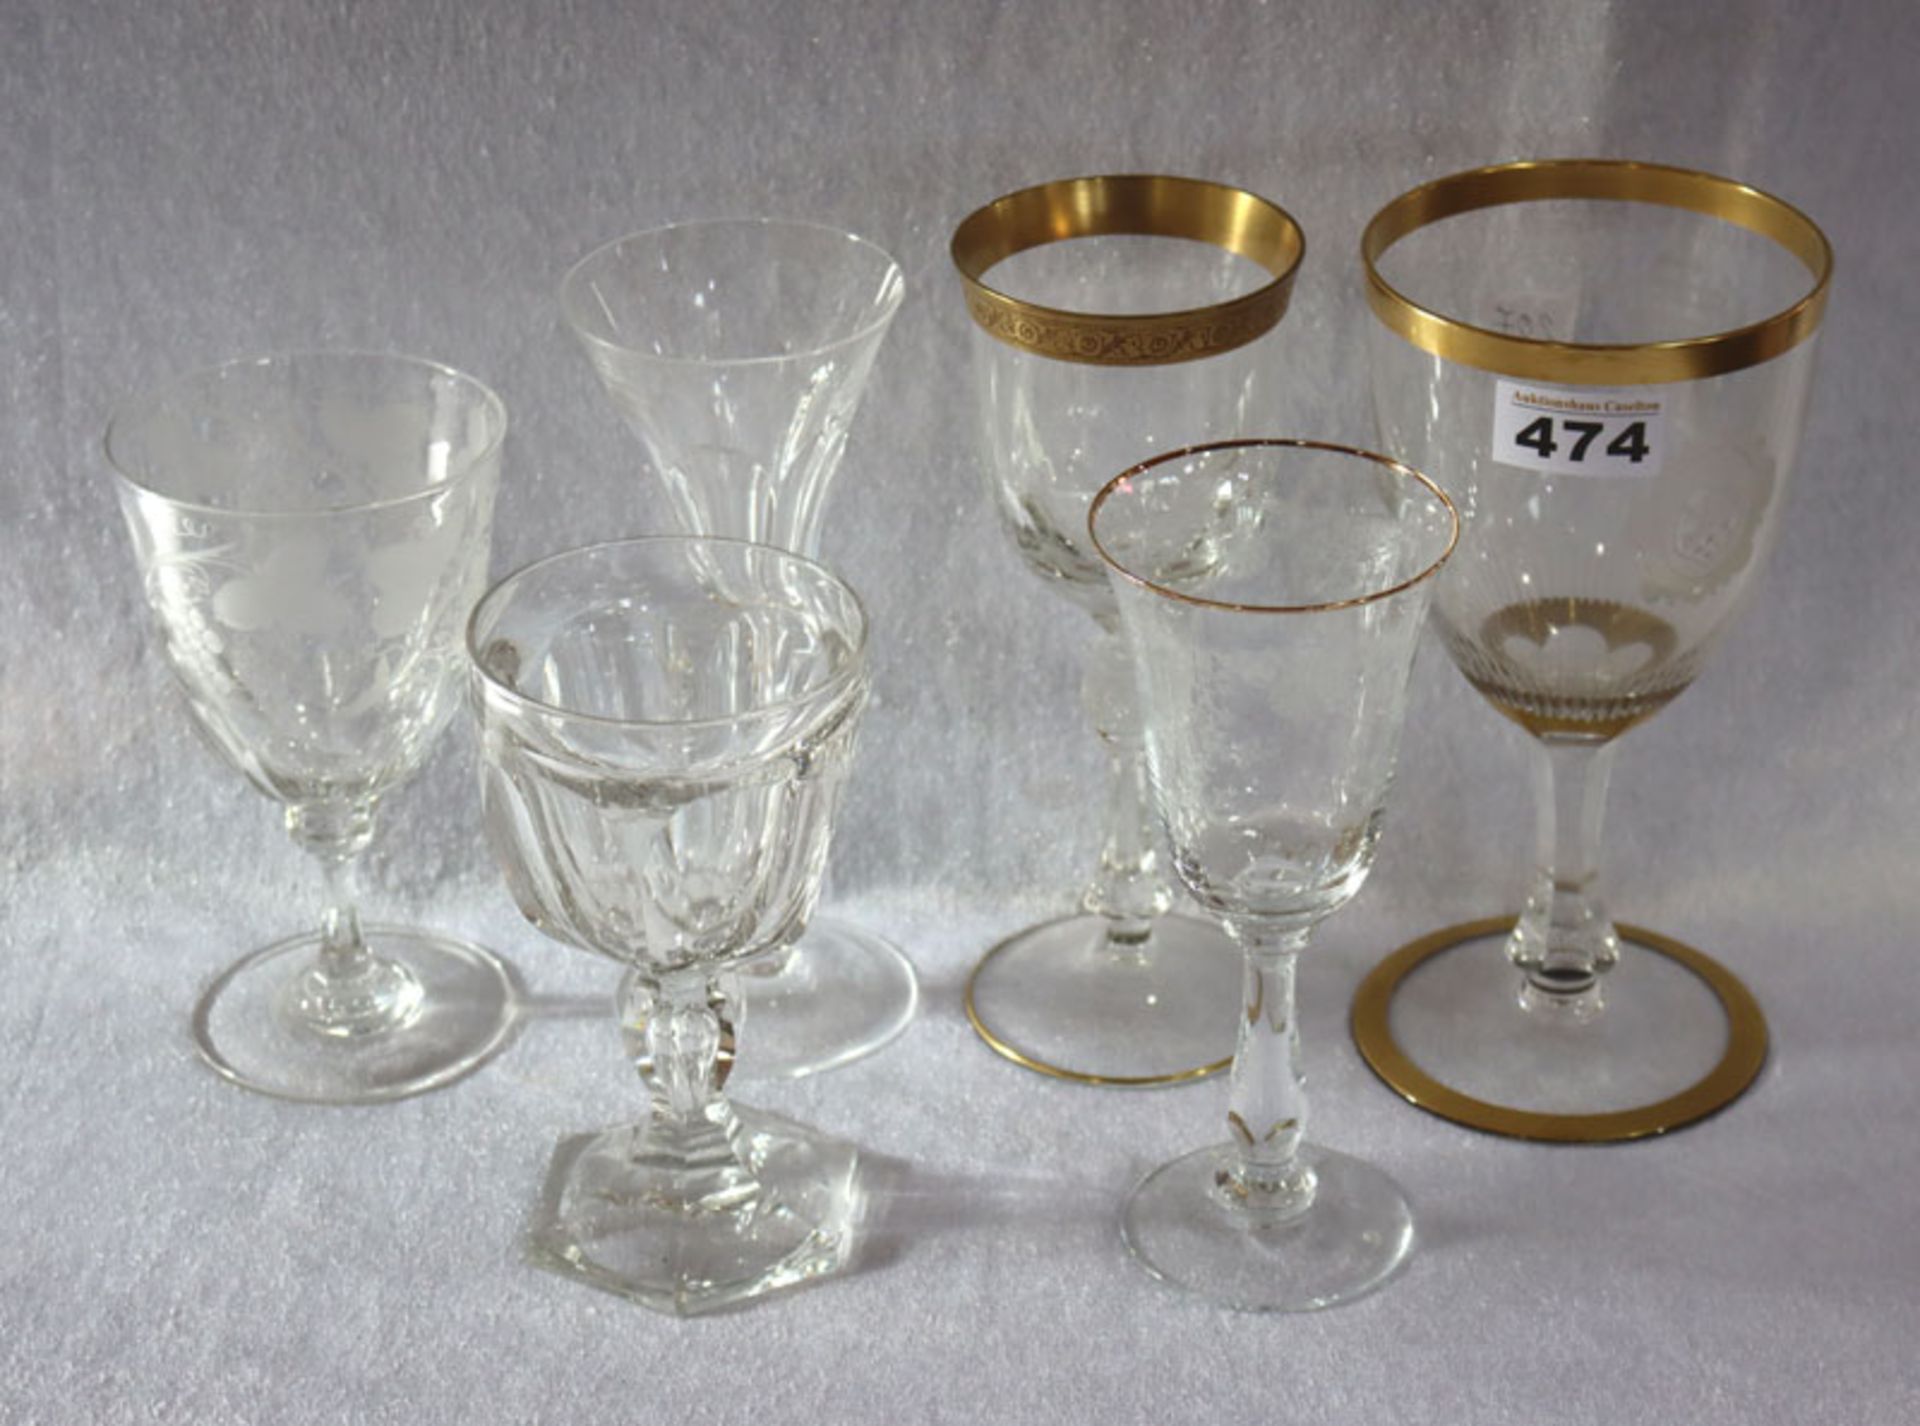 Trinkglas-Konvolut von 6 diversen Gläsern, teils geschliffen, teils graviert, 2 mit Goldrand,